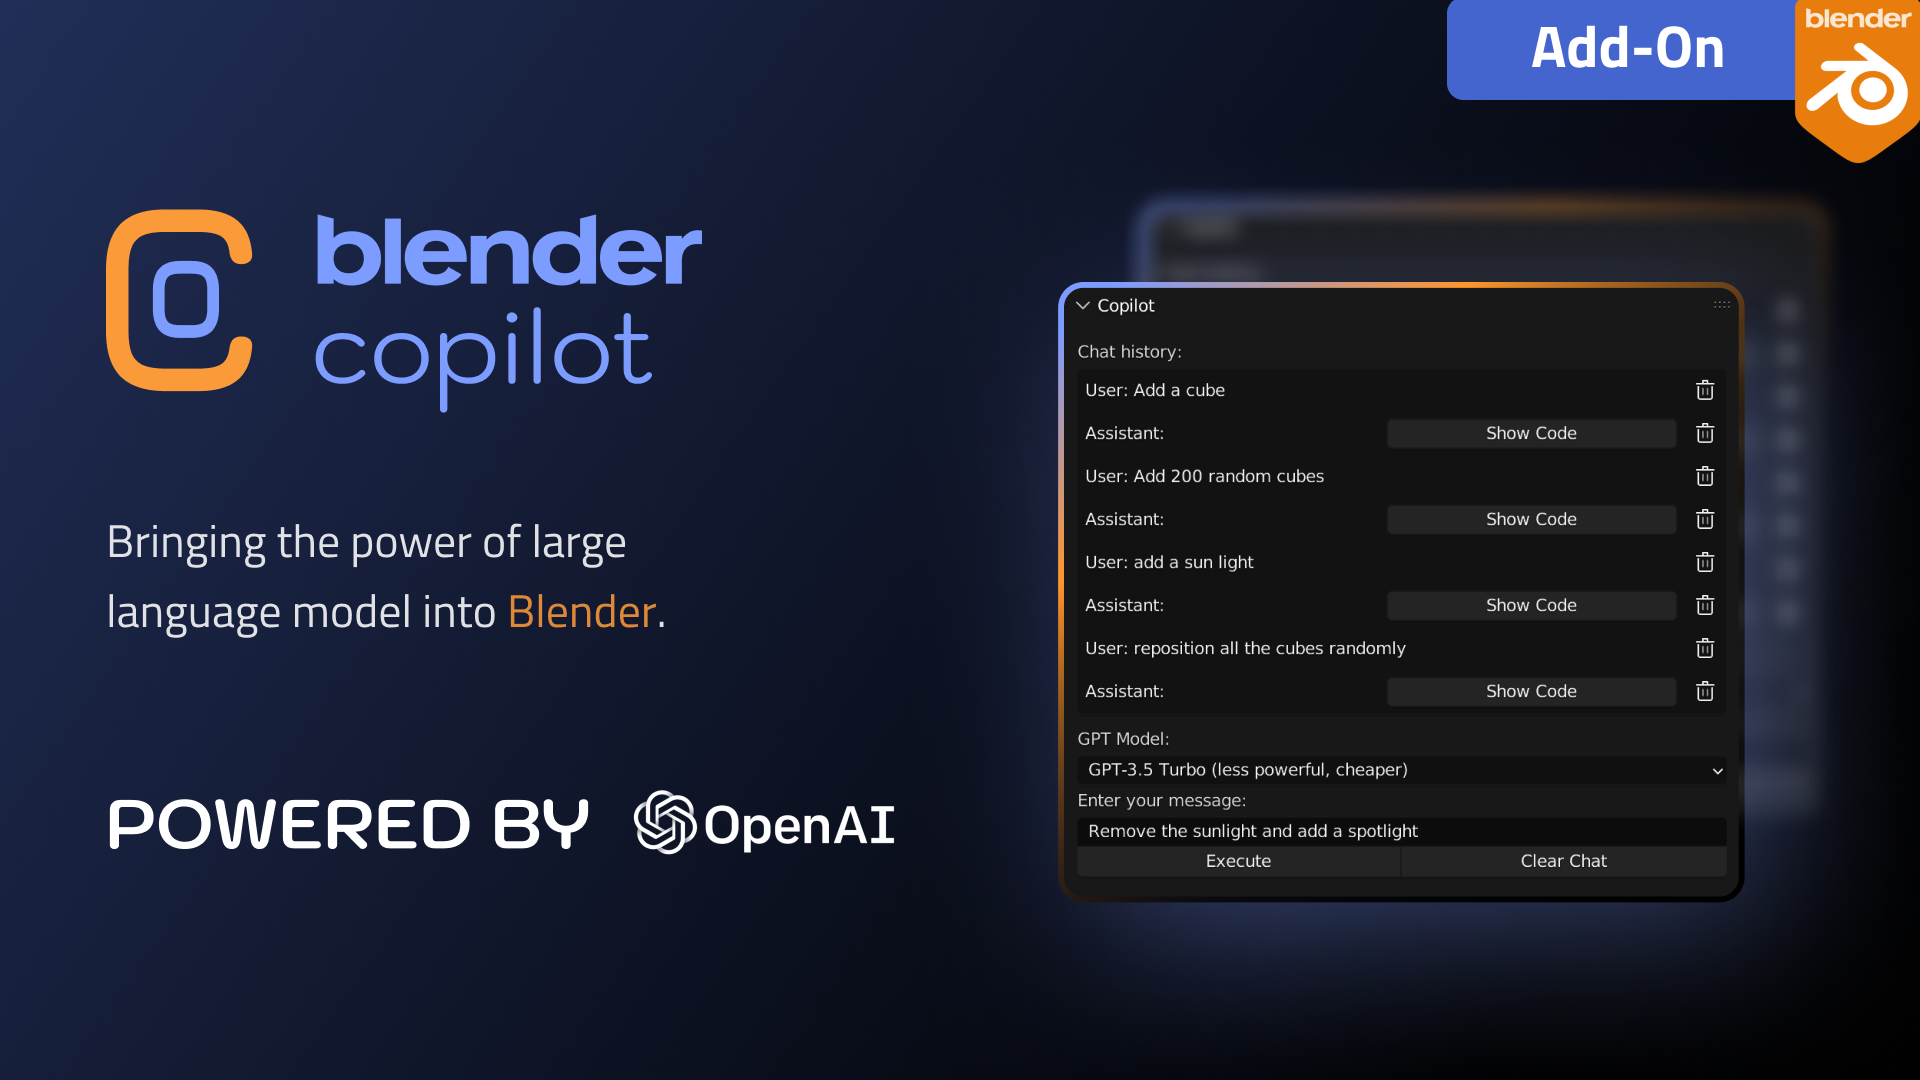 Blender Copilot (Blender Gpt) v1.0.1